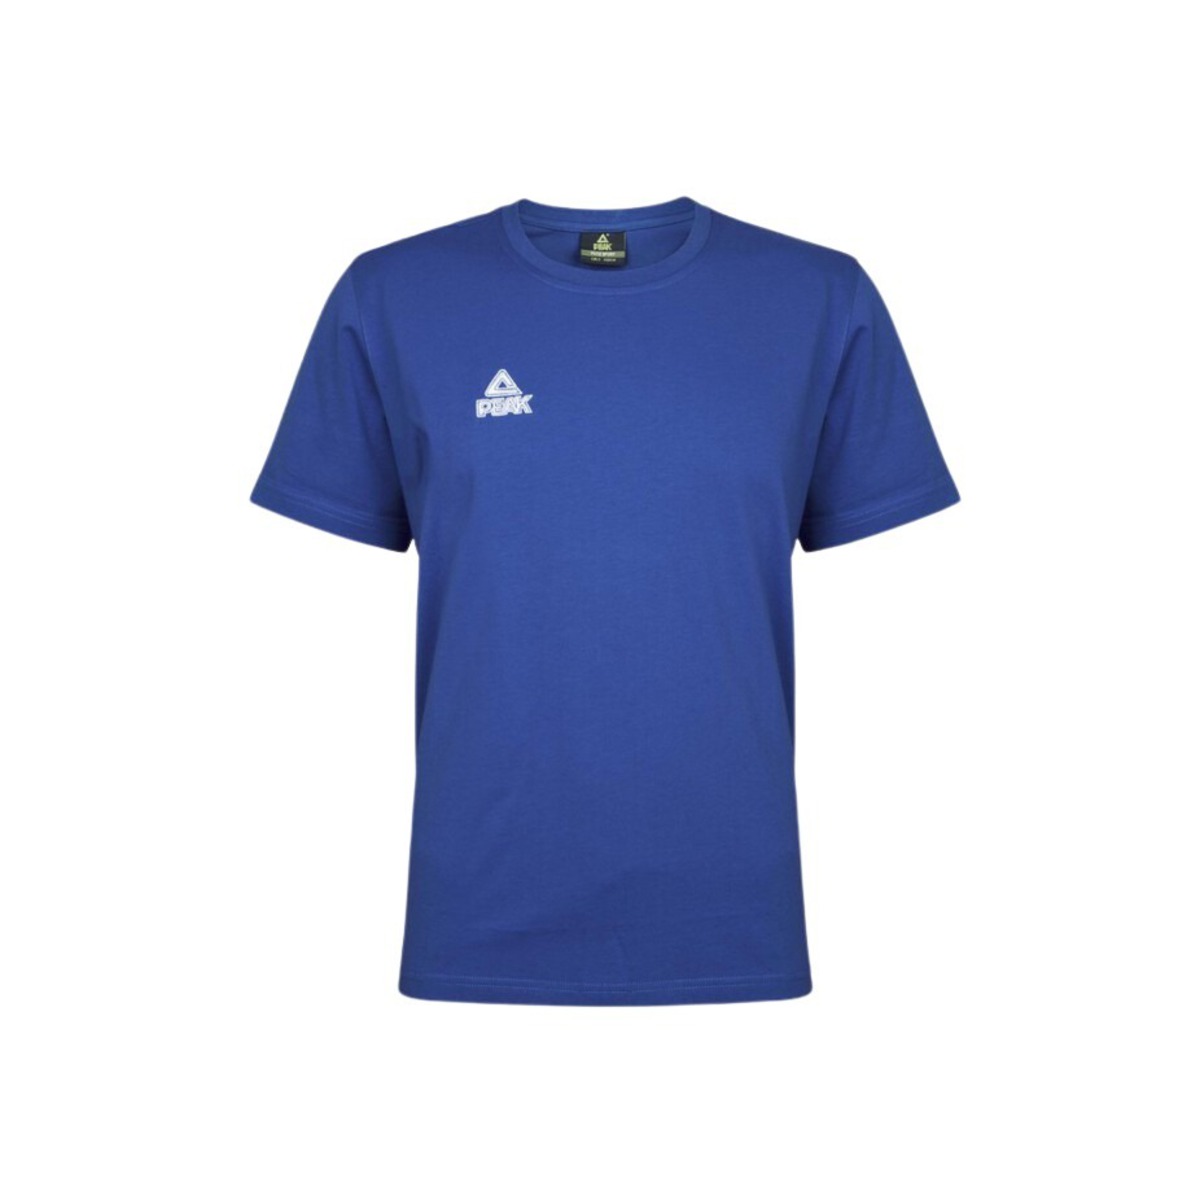 Camiseta Peak Classic - Azul  MKP